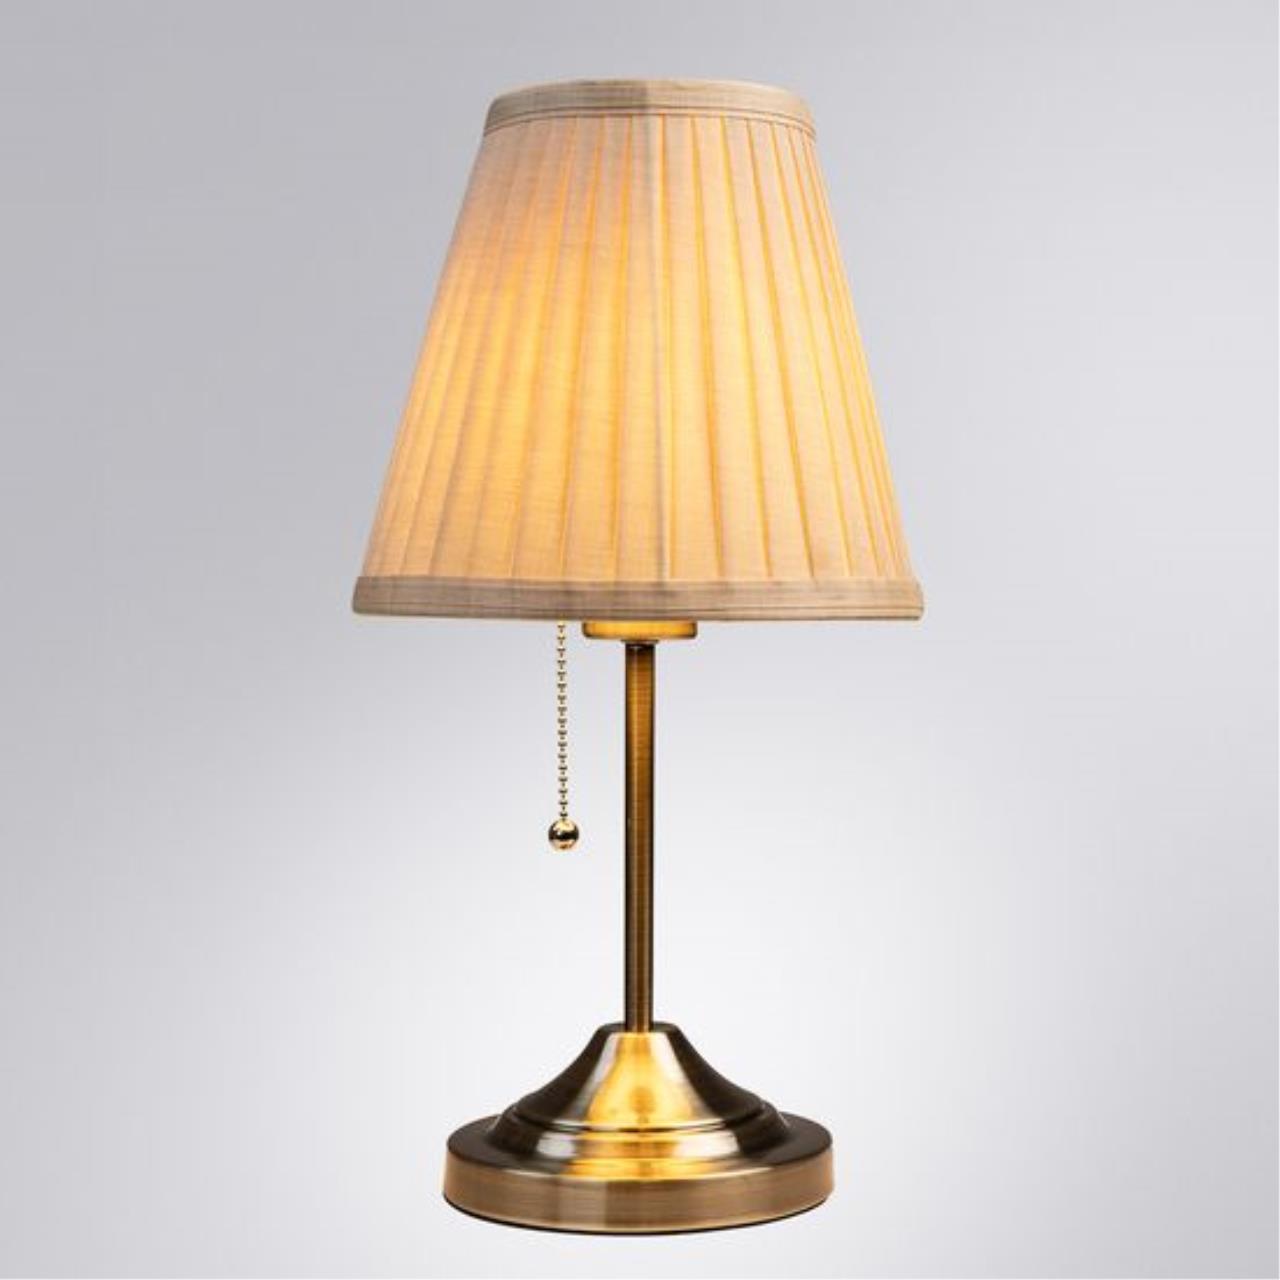 Интерьерная настольная лампа Arte lamp A5039TL-1AB